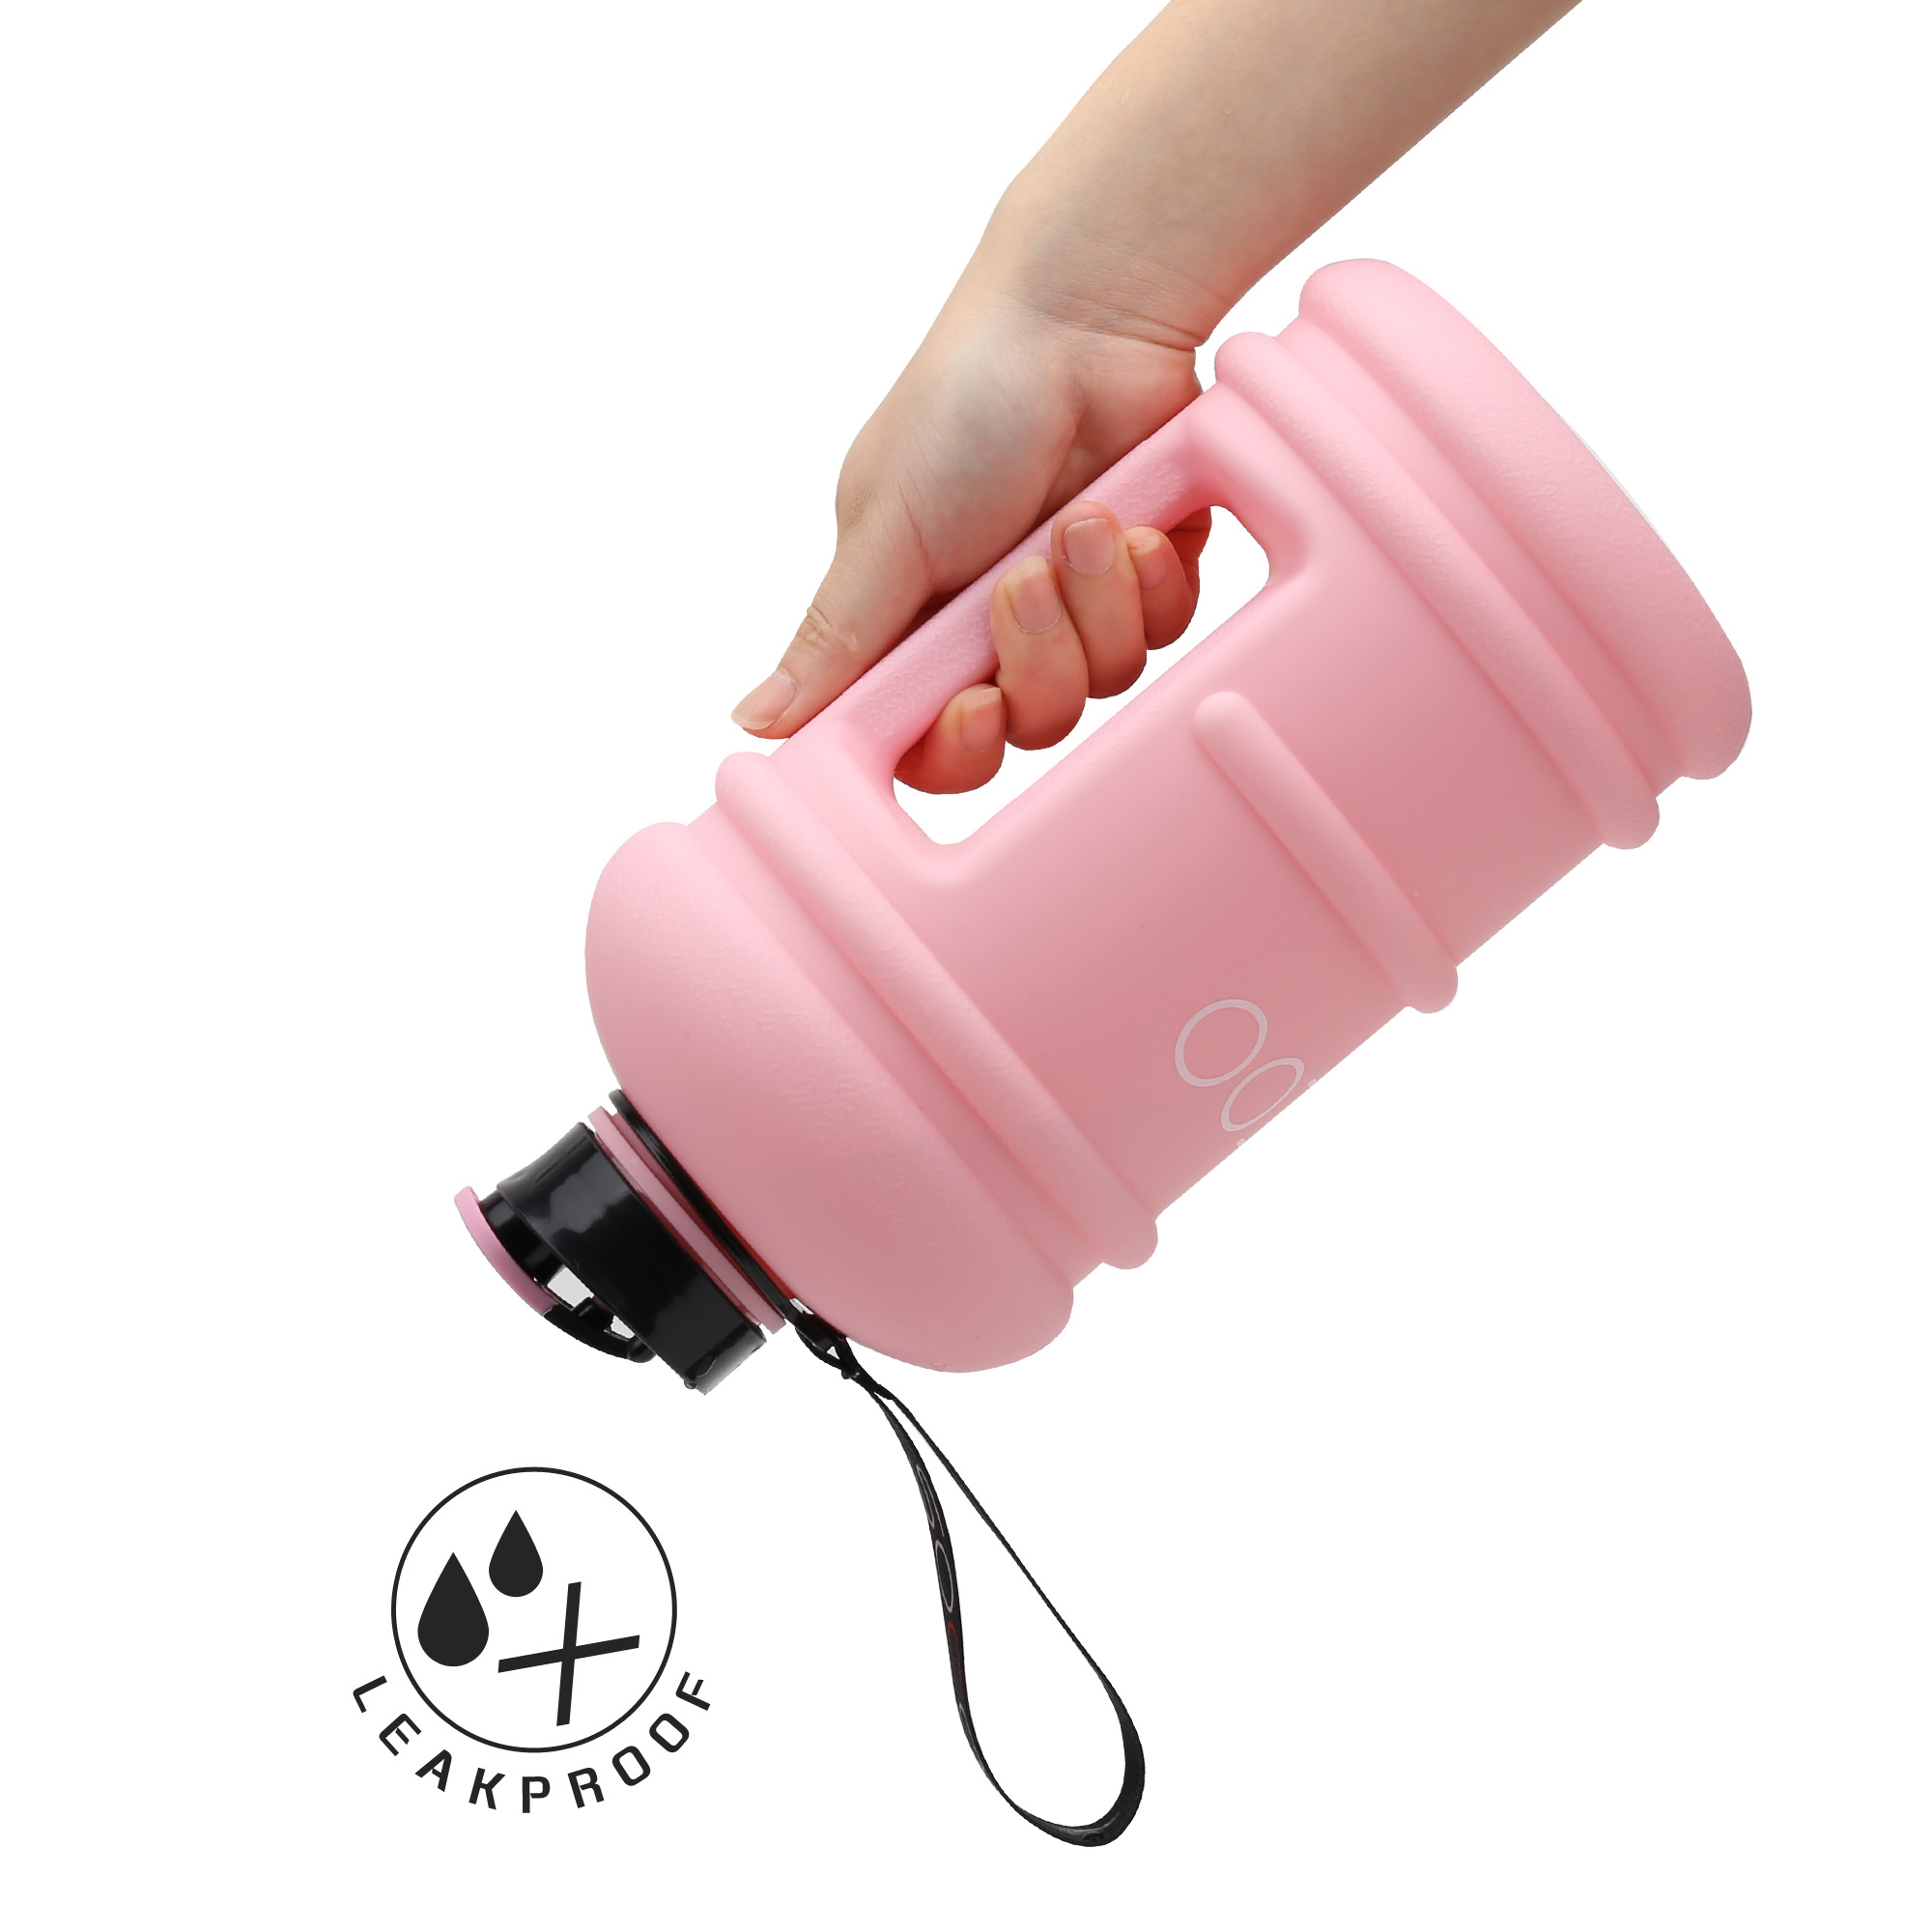 https://www.socoobottle.com/wp-content/uploads/2018/09/leak-proof-water-bottle-pink.jpg